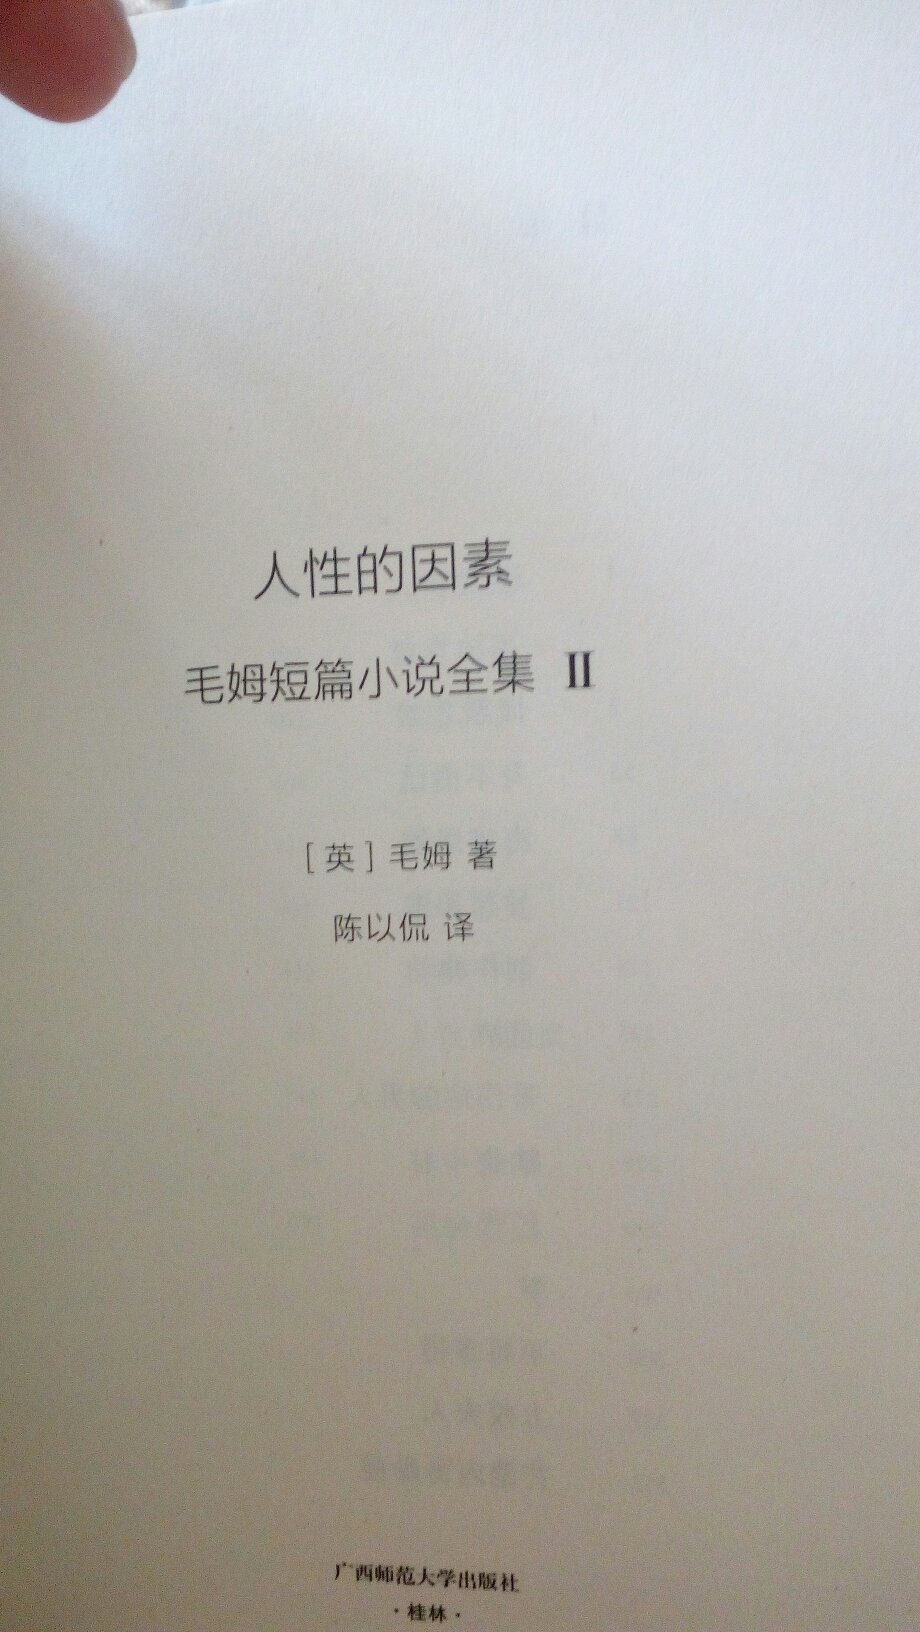 广西师范大学版的《毛姆短篇小说全集》，共四卷，已出两卷。